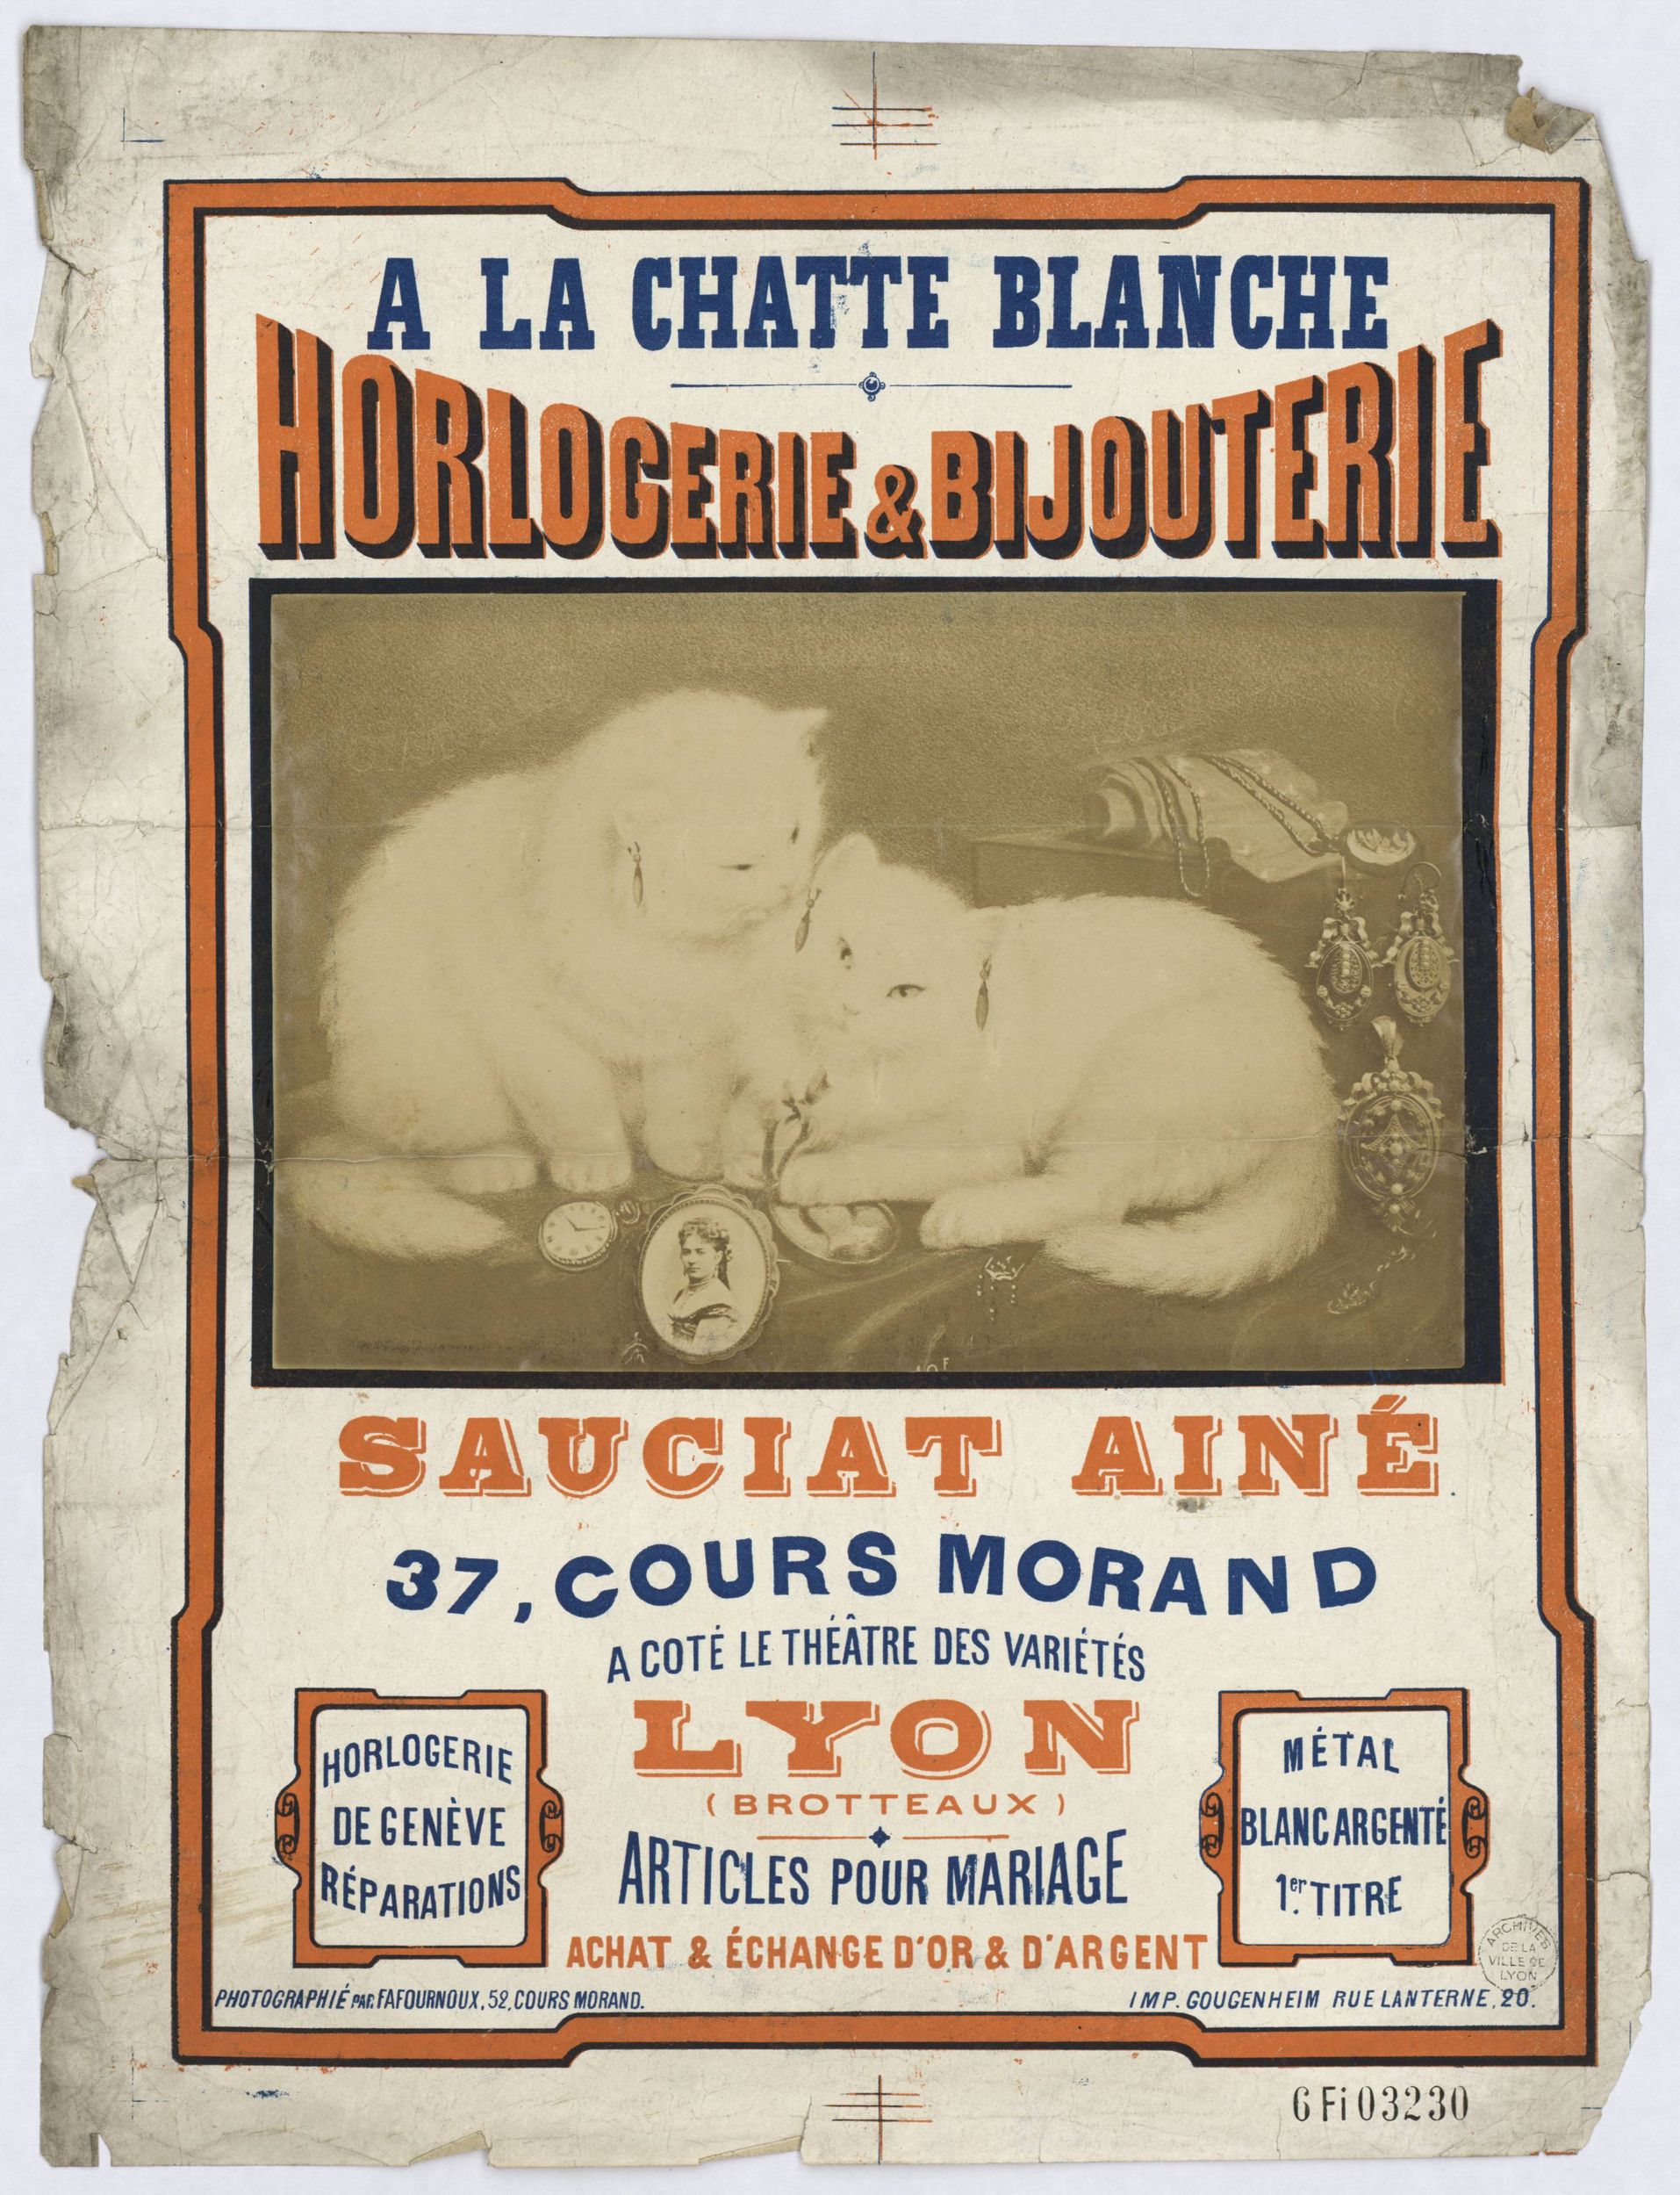 A la chatte blanche - Horlogerie et bijouterie, Sauciat ainé : affiche publicitaire couleur (1860, cote : 6FI/3230)